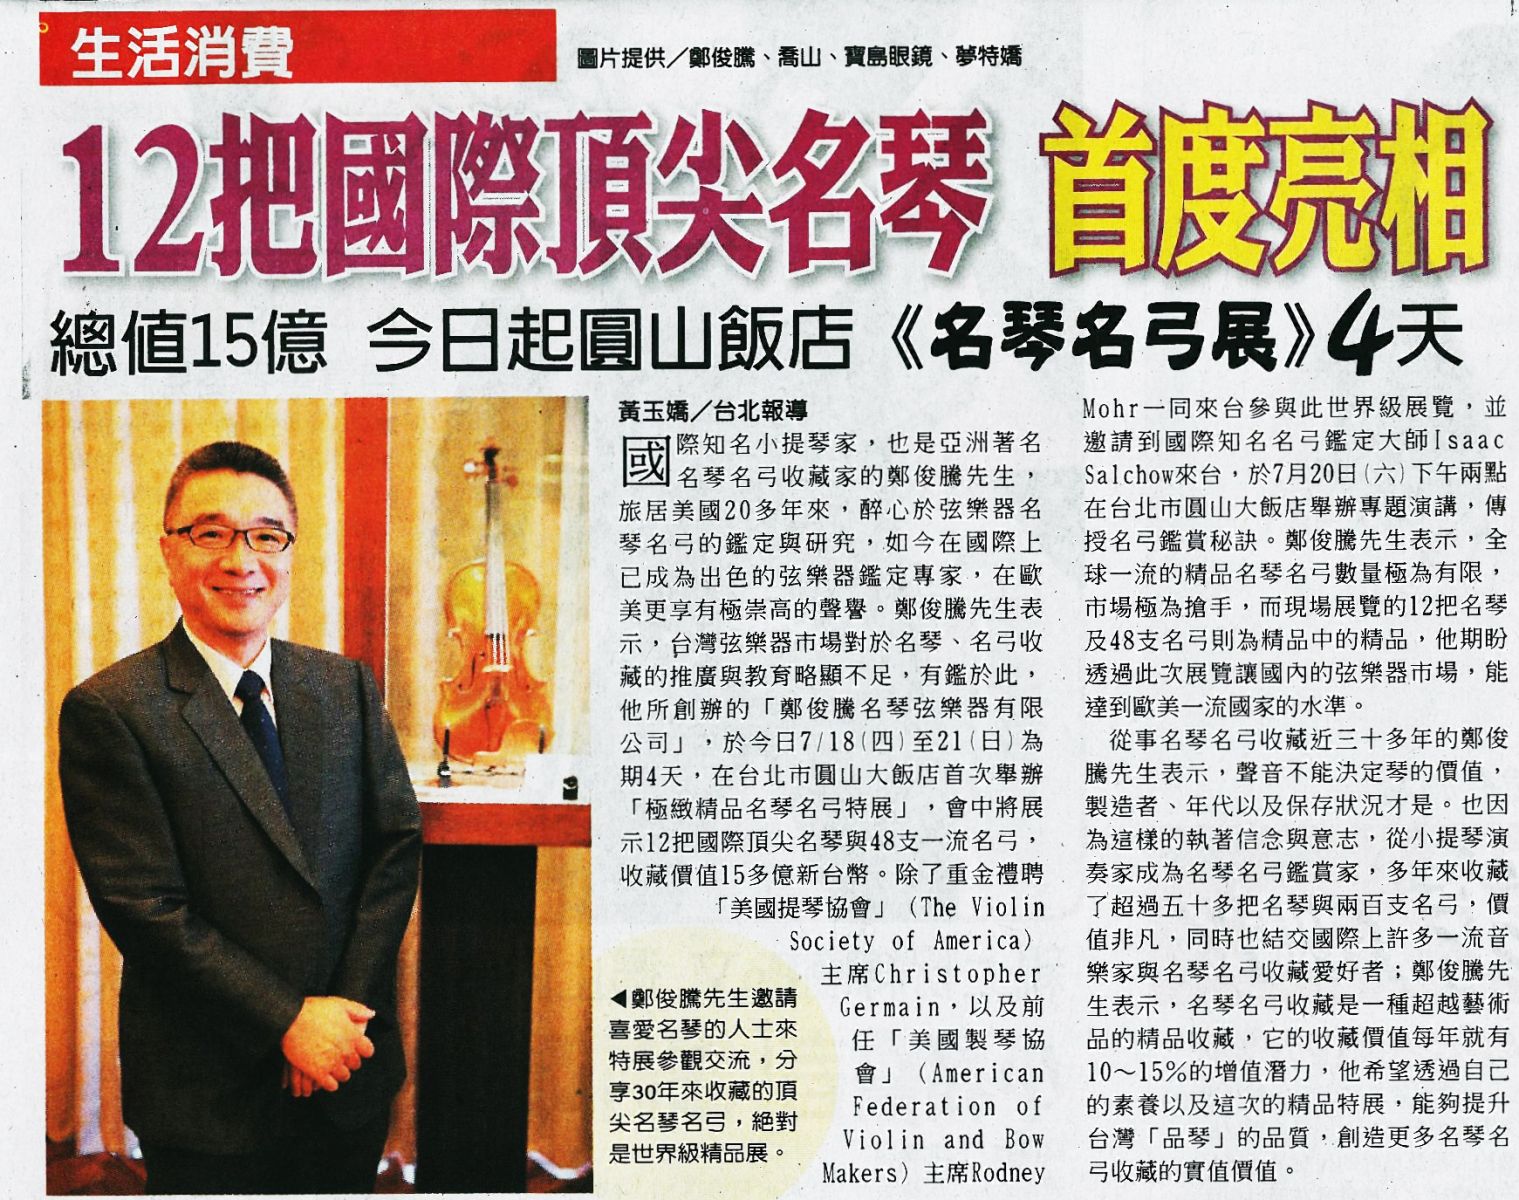 中國時報 12把國際頂尖名琴首度亮相 孟橙策略行銷